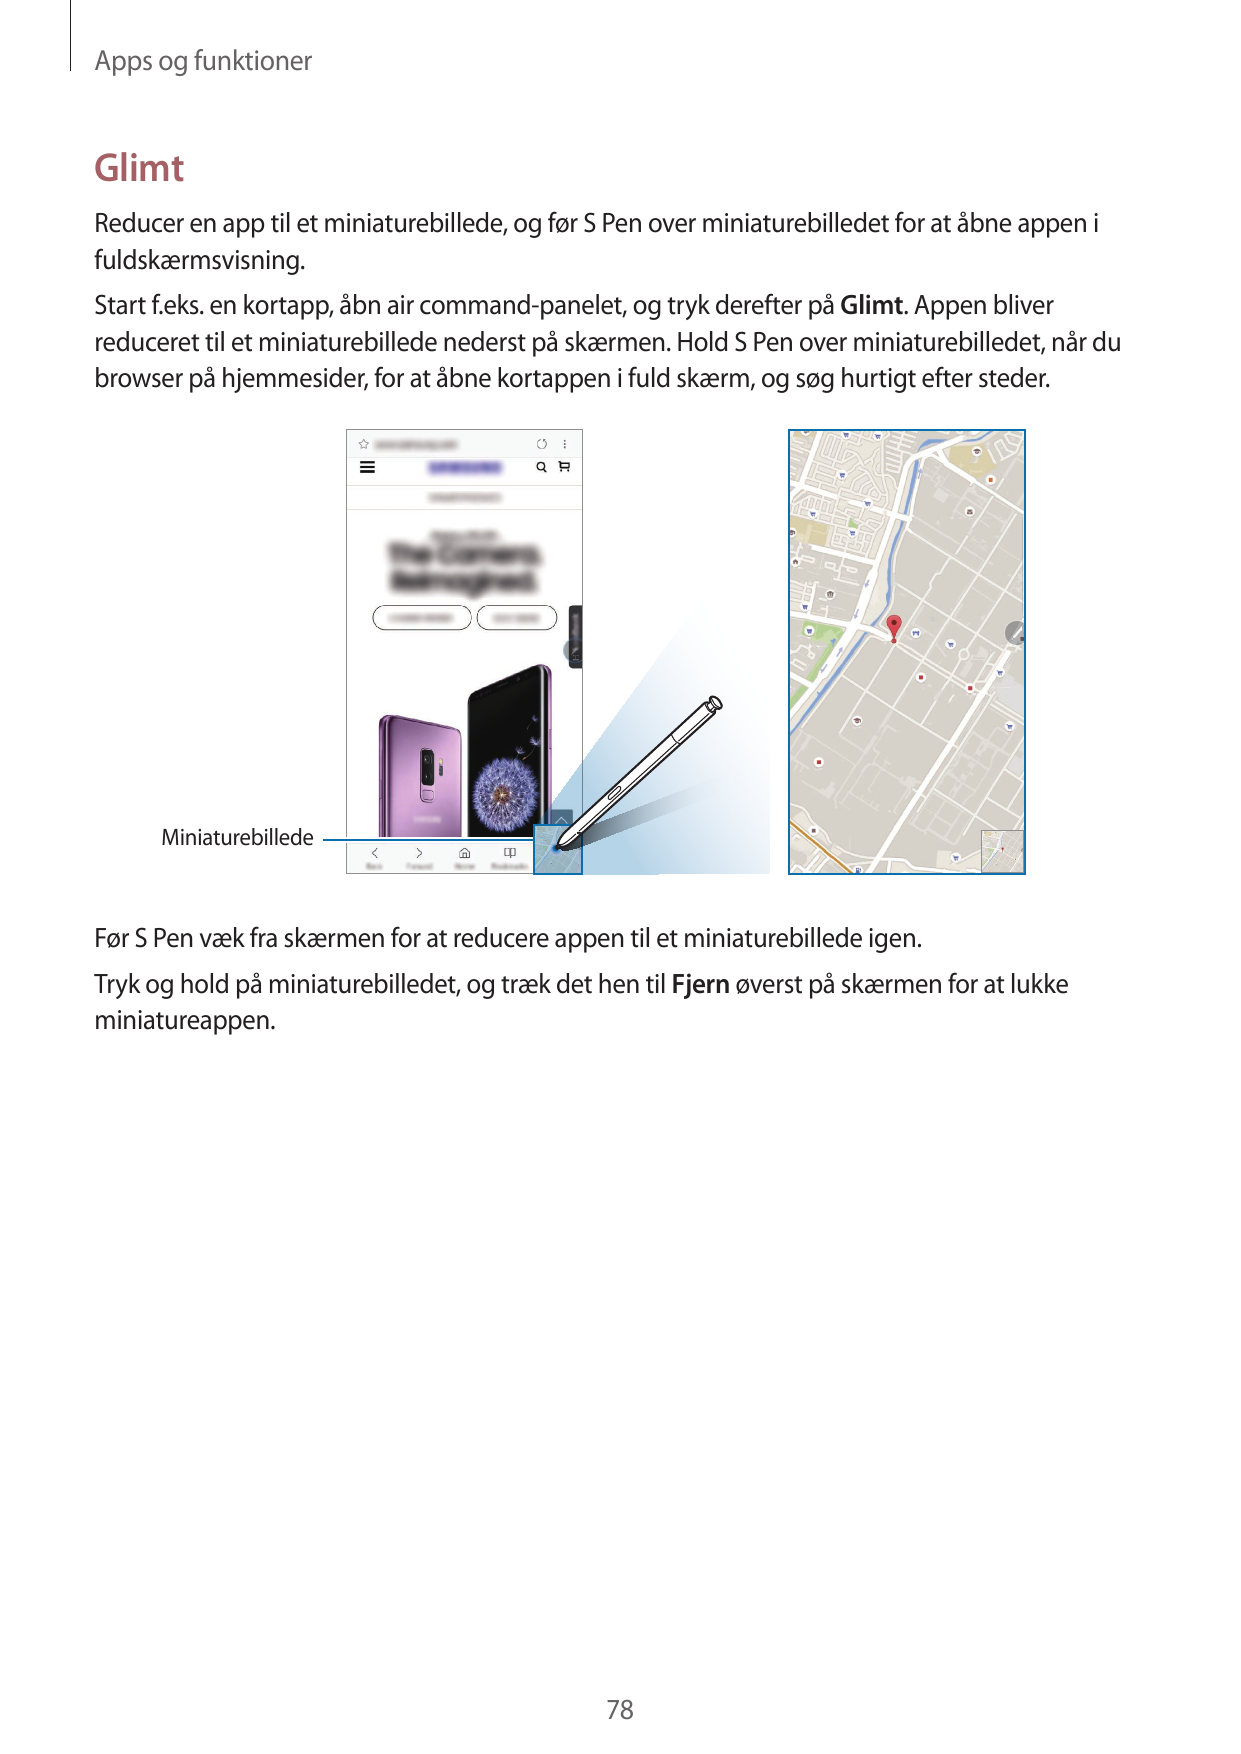 Apps og funktionerGlimtReducer en app til et miniaturebillede, og før S Pen over miniaturebilledet for at åbne appen ifuldskærms